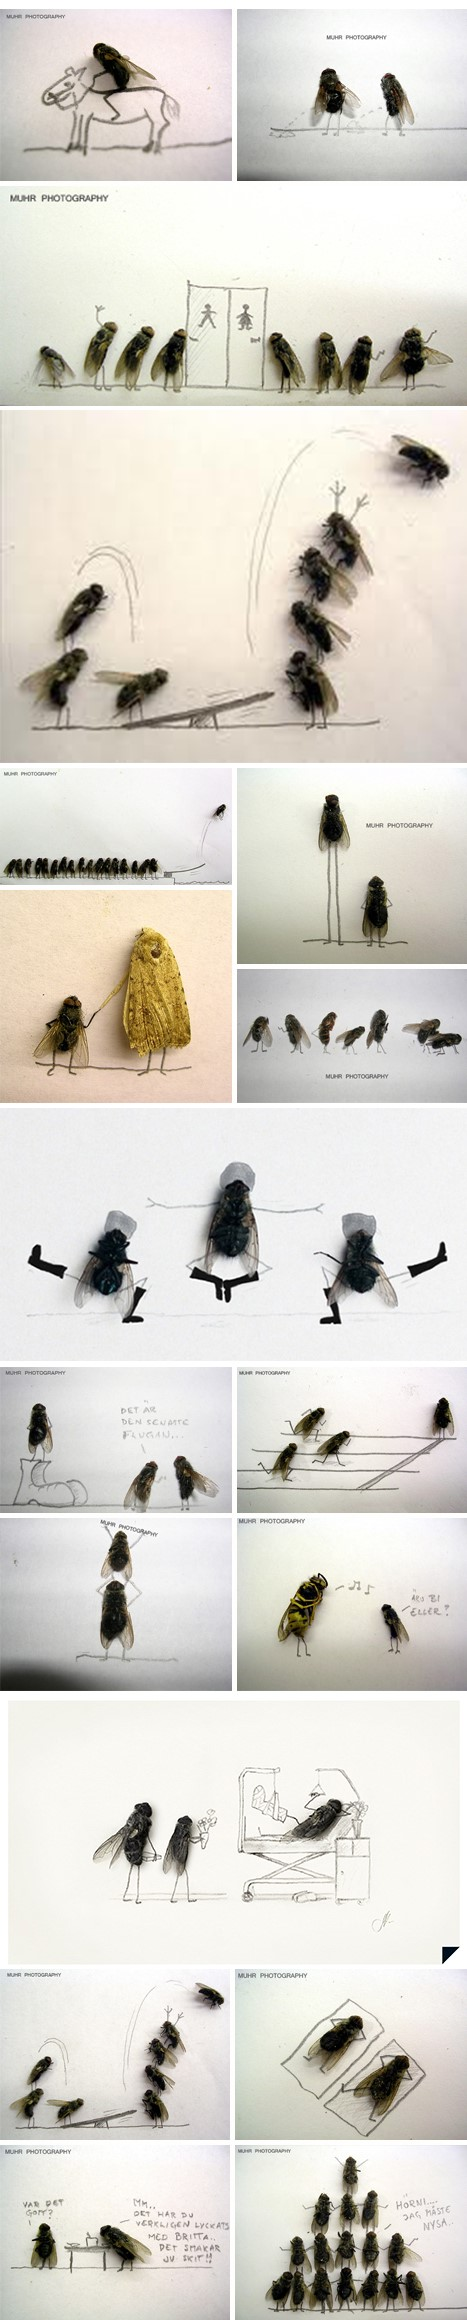 Dead Flies Art by Magnus Muhr